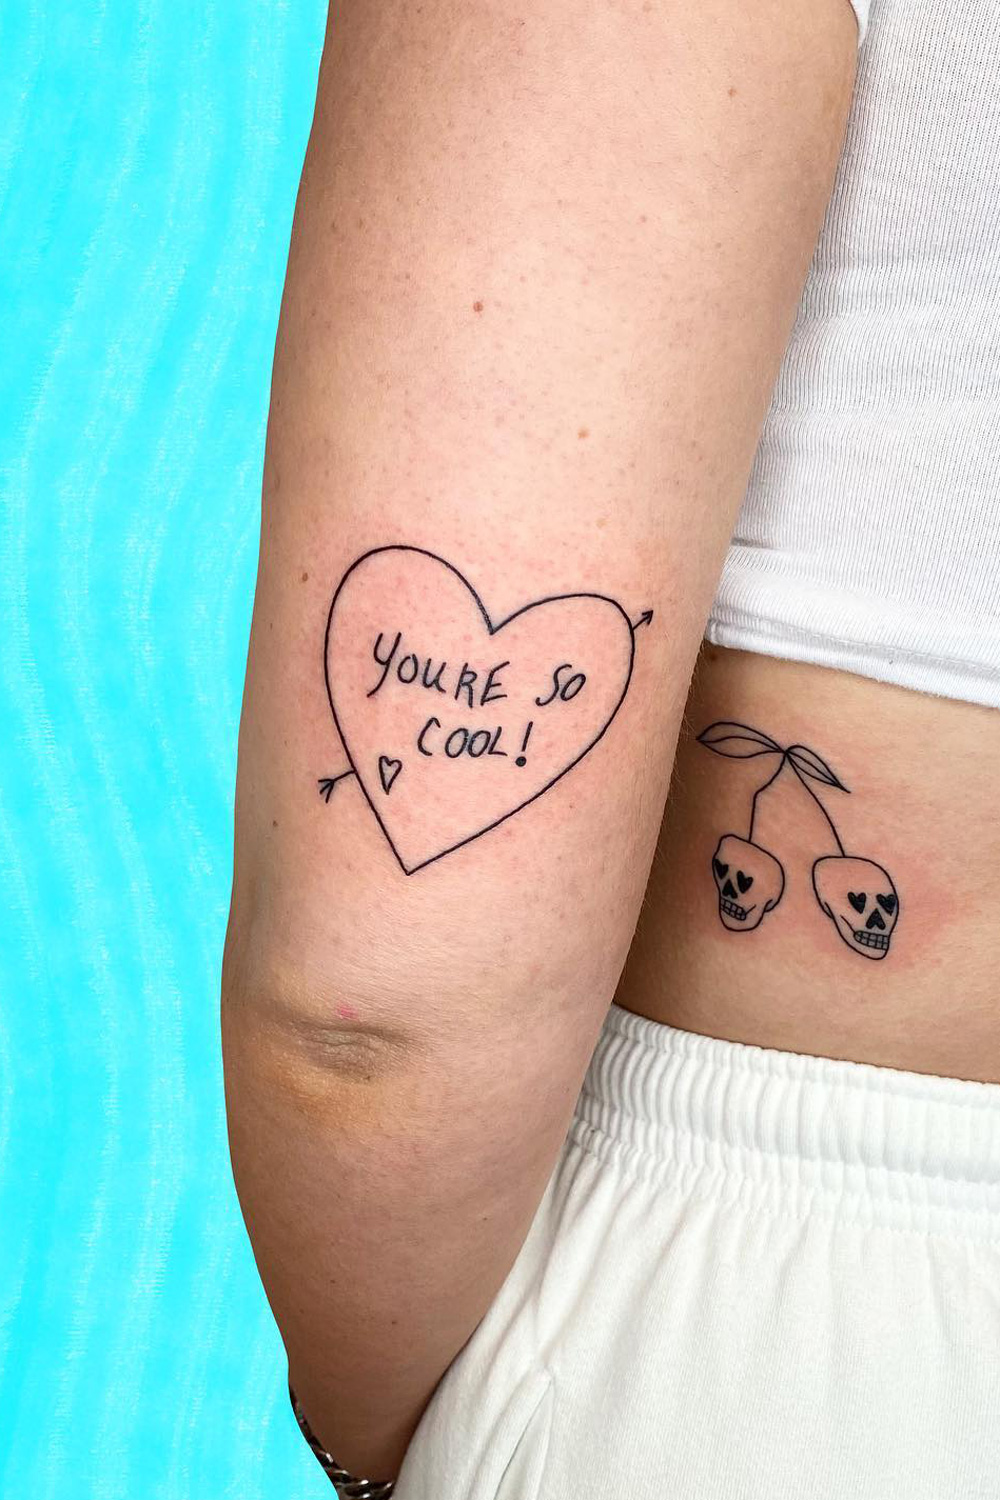 70+ Tatuajes de Amor Propio # Diseños para Mujeres y Hombres